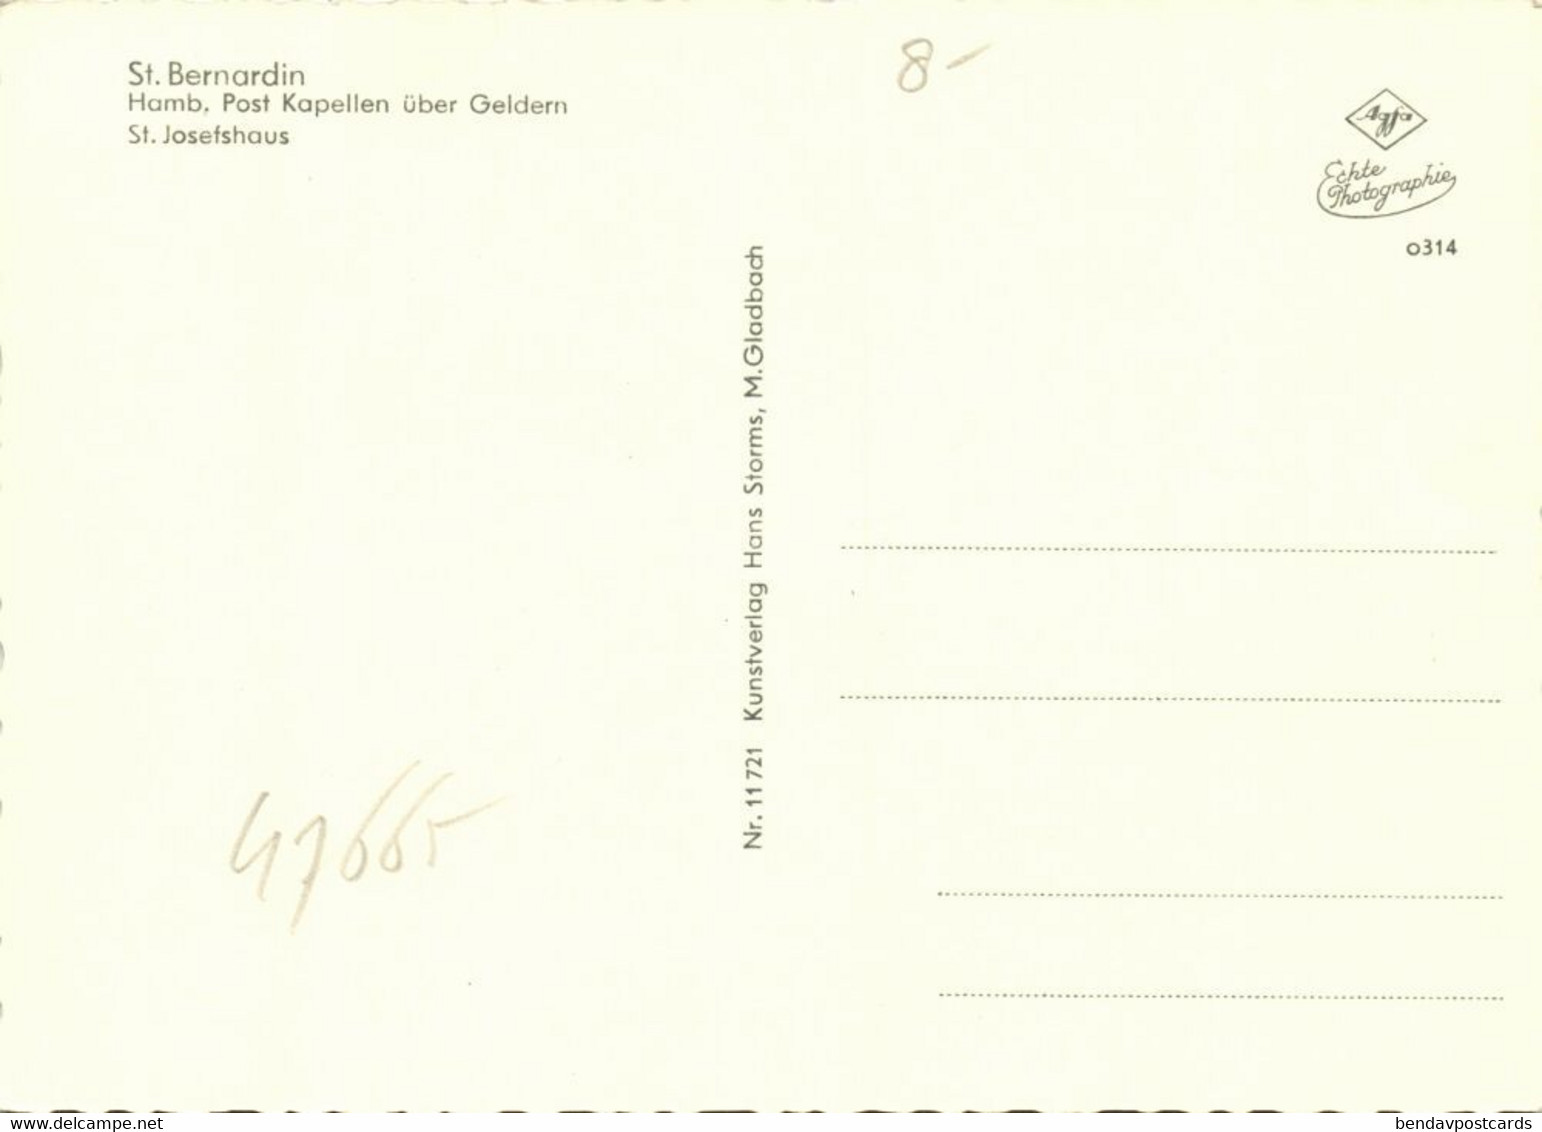 HAMB, Post Kapellen ü. Geldern, St. Bernardin, St. Josefshaus (1960s) AK - Geldern